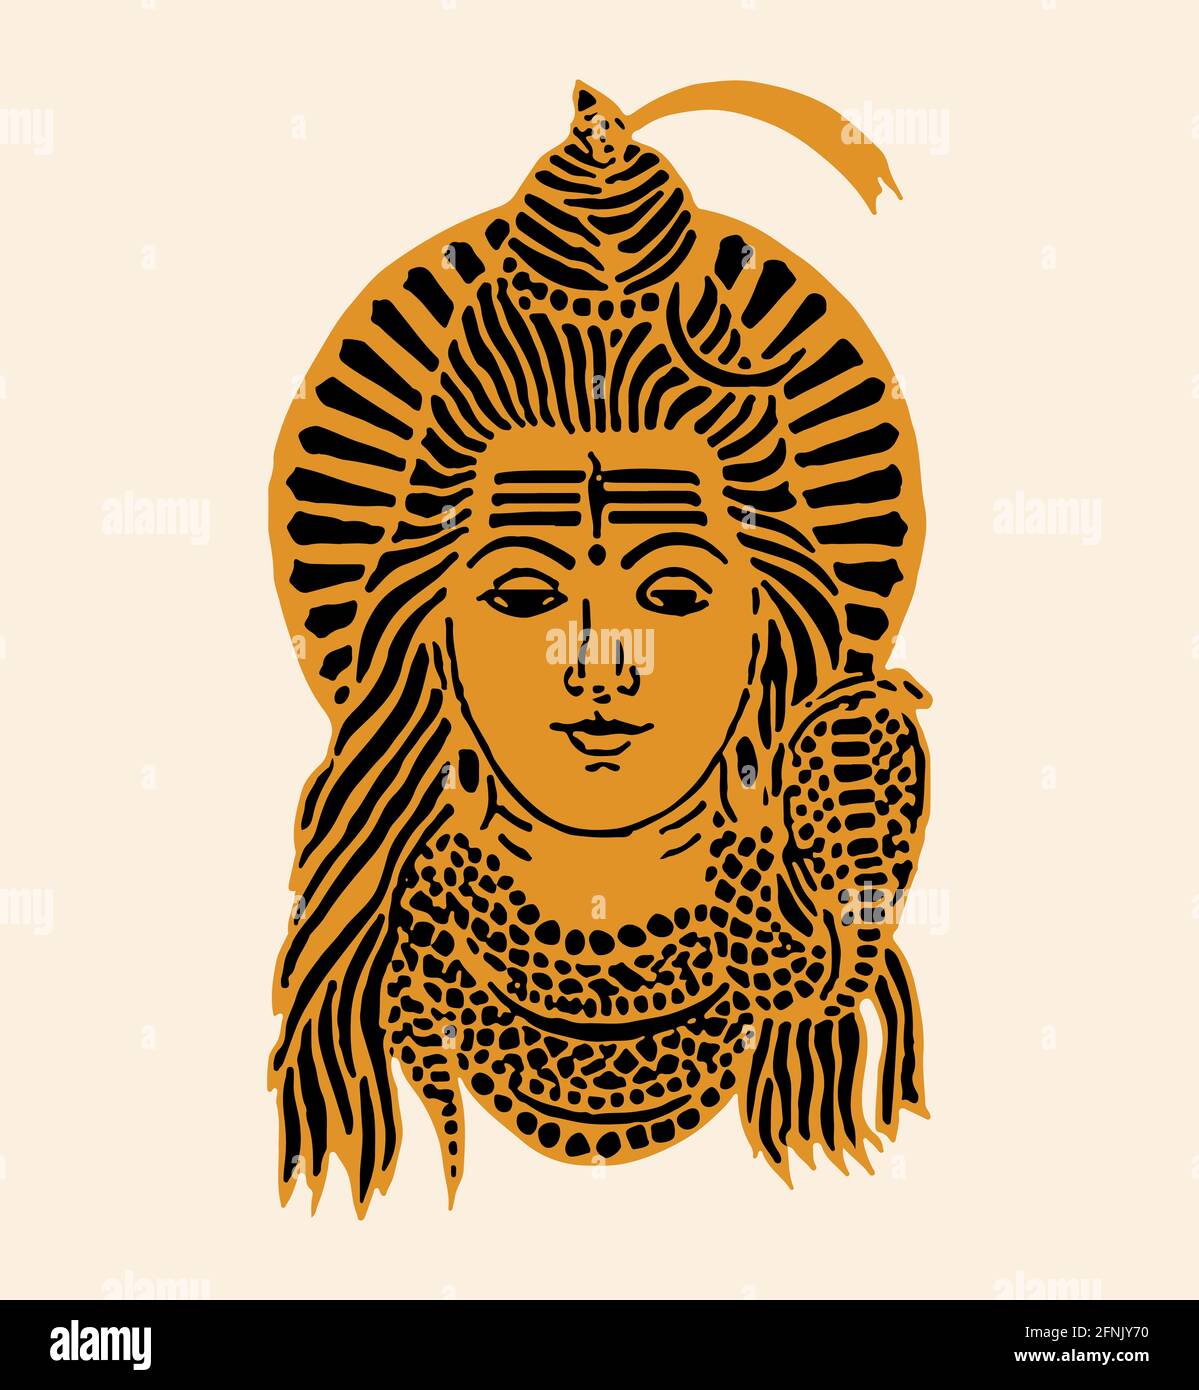 Illustrazione di un disegno del famoso e potente dio indiano Lord Shiva su uno sfondo luminoso Foto Stock